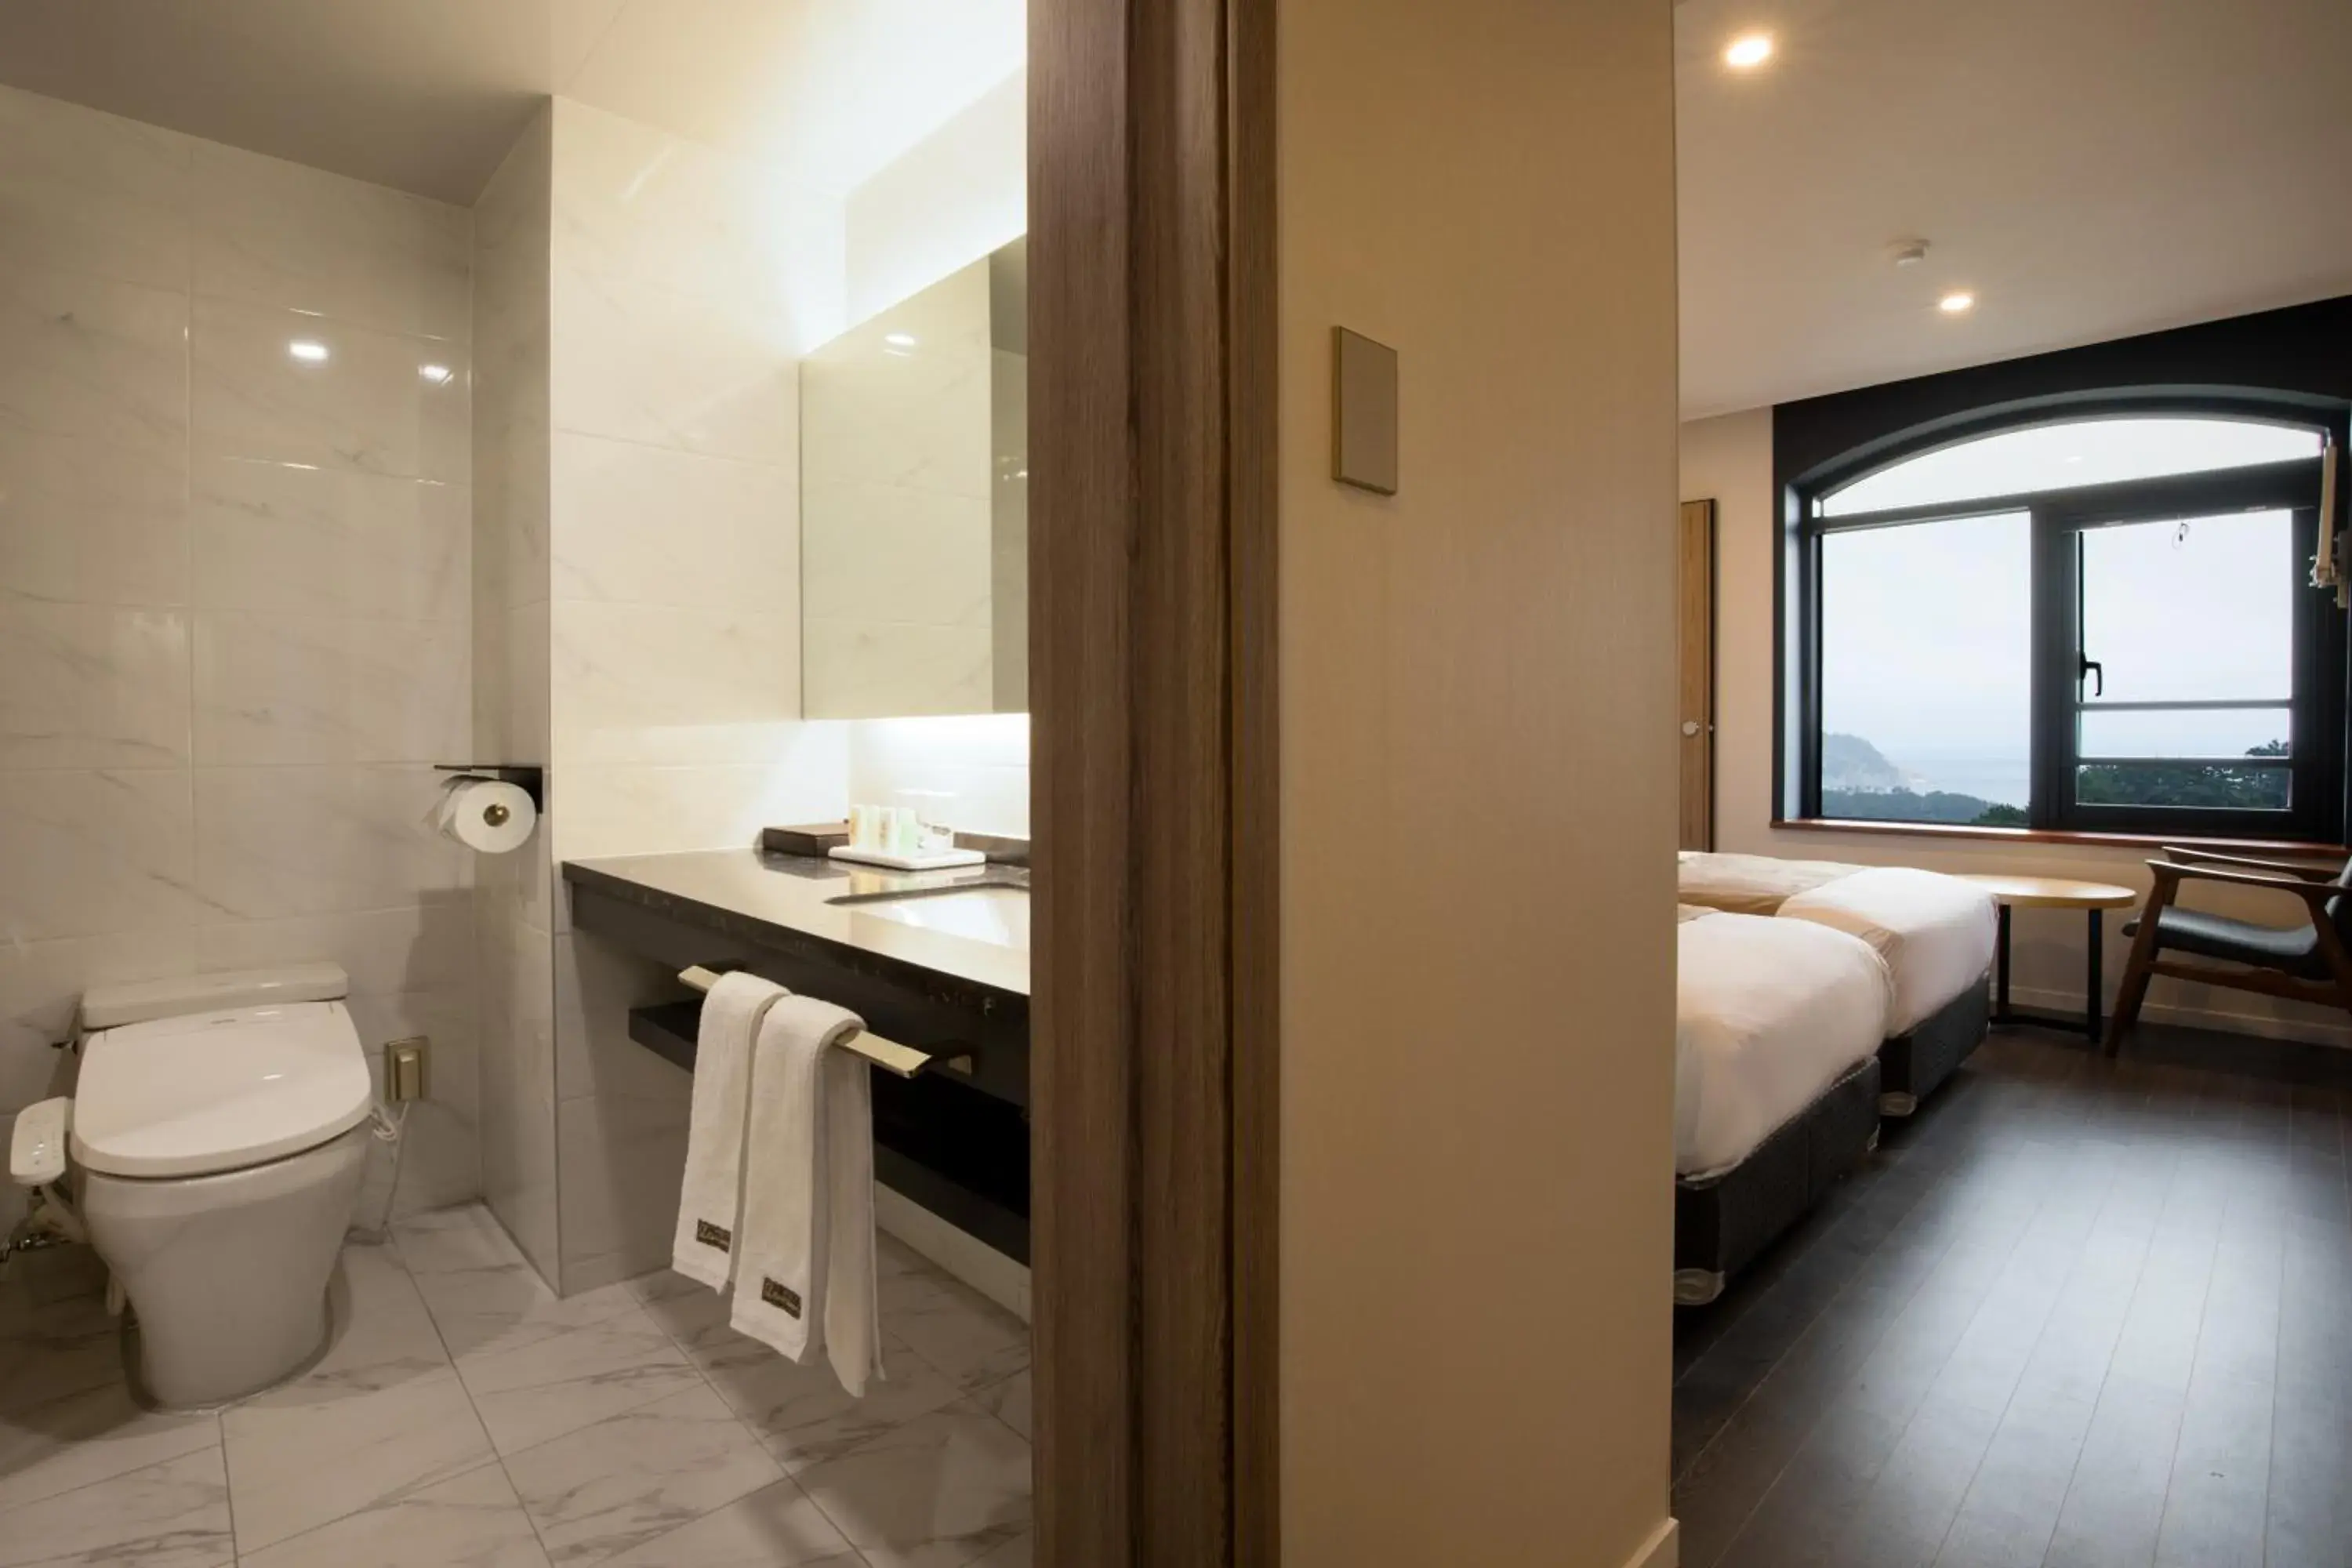 Toilet, Bathroom in Casaloma hotel